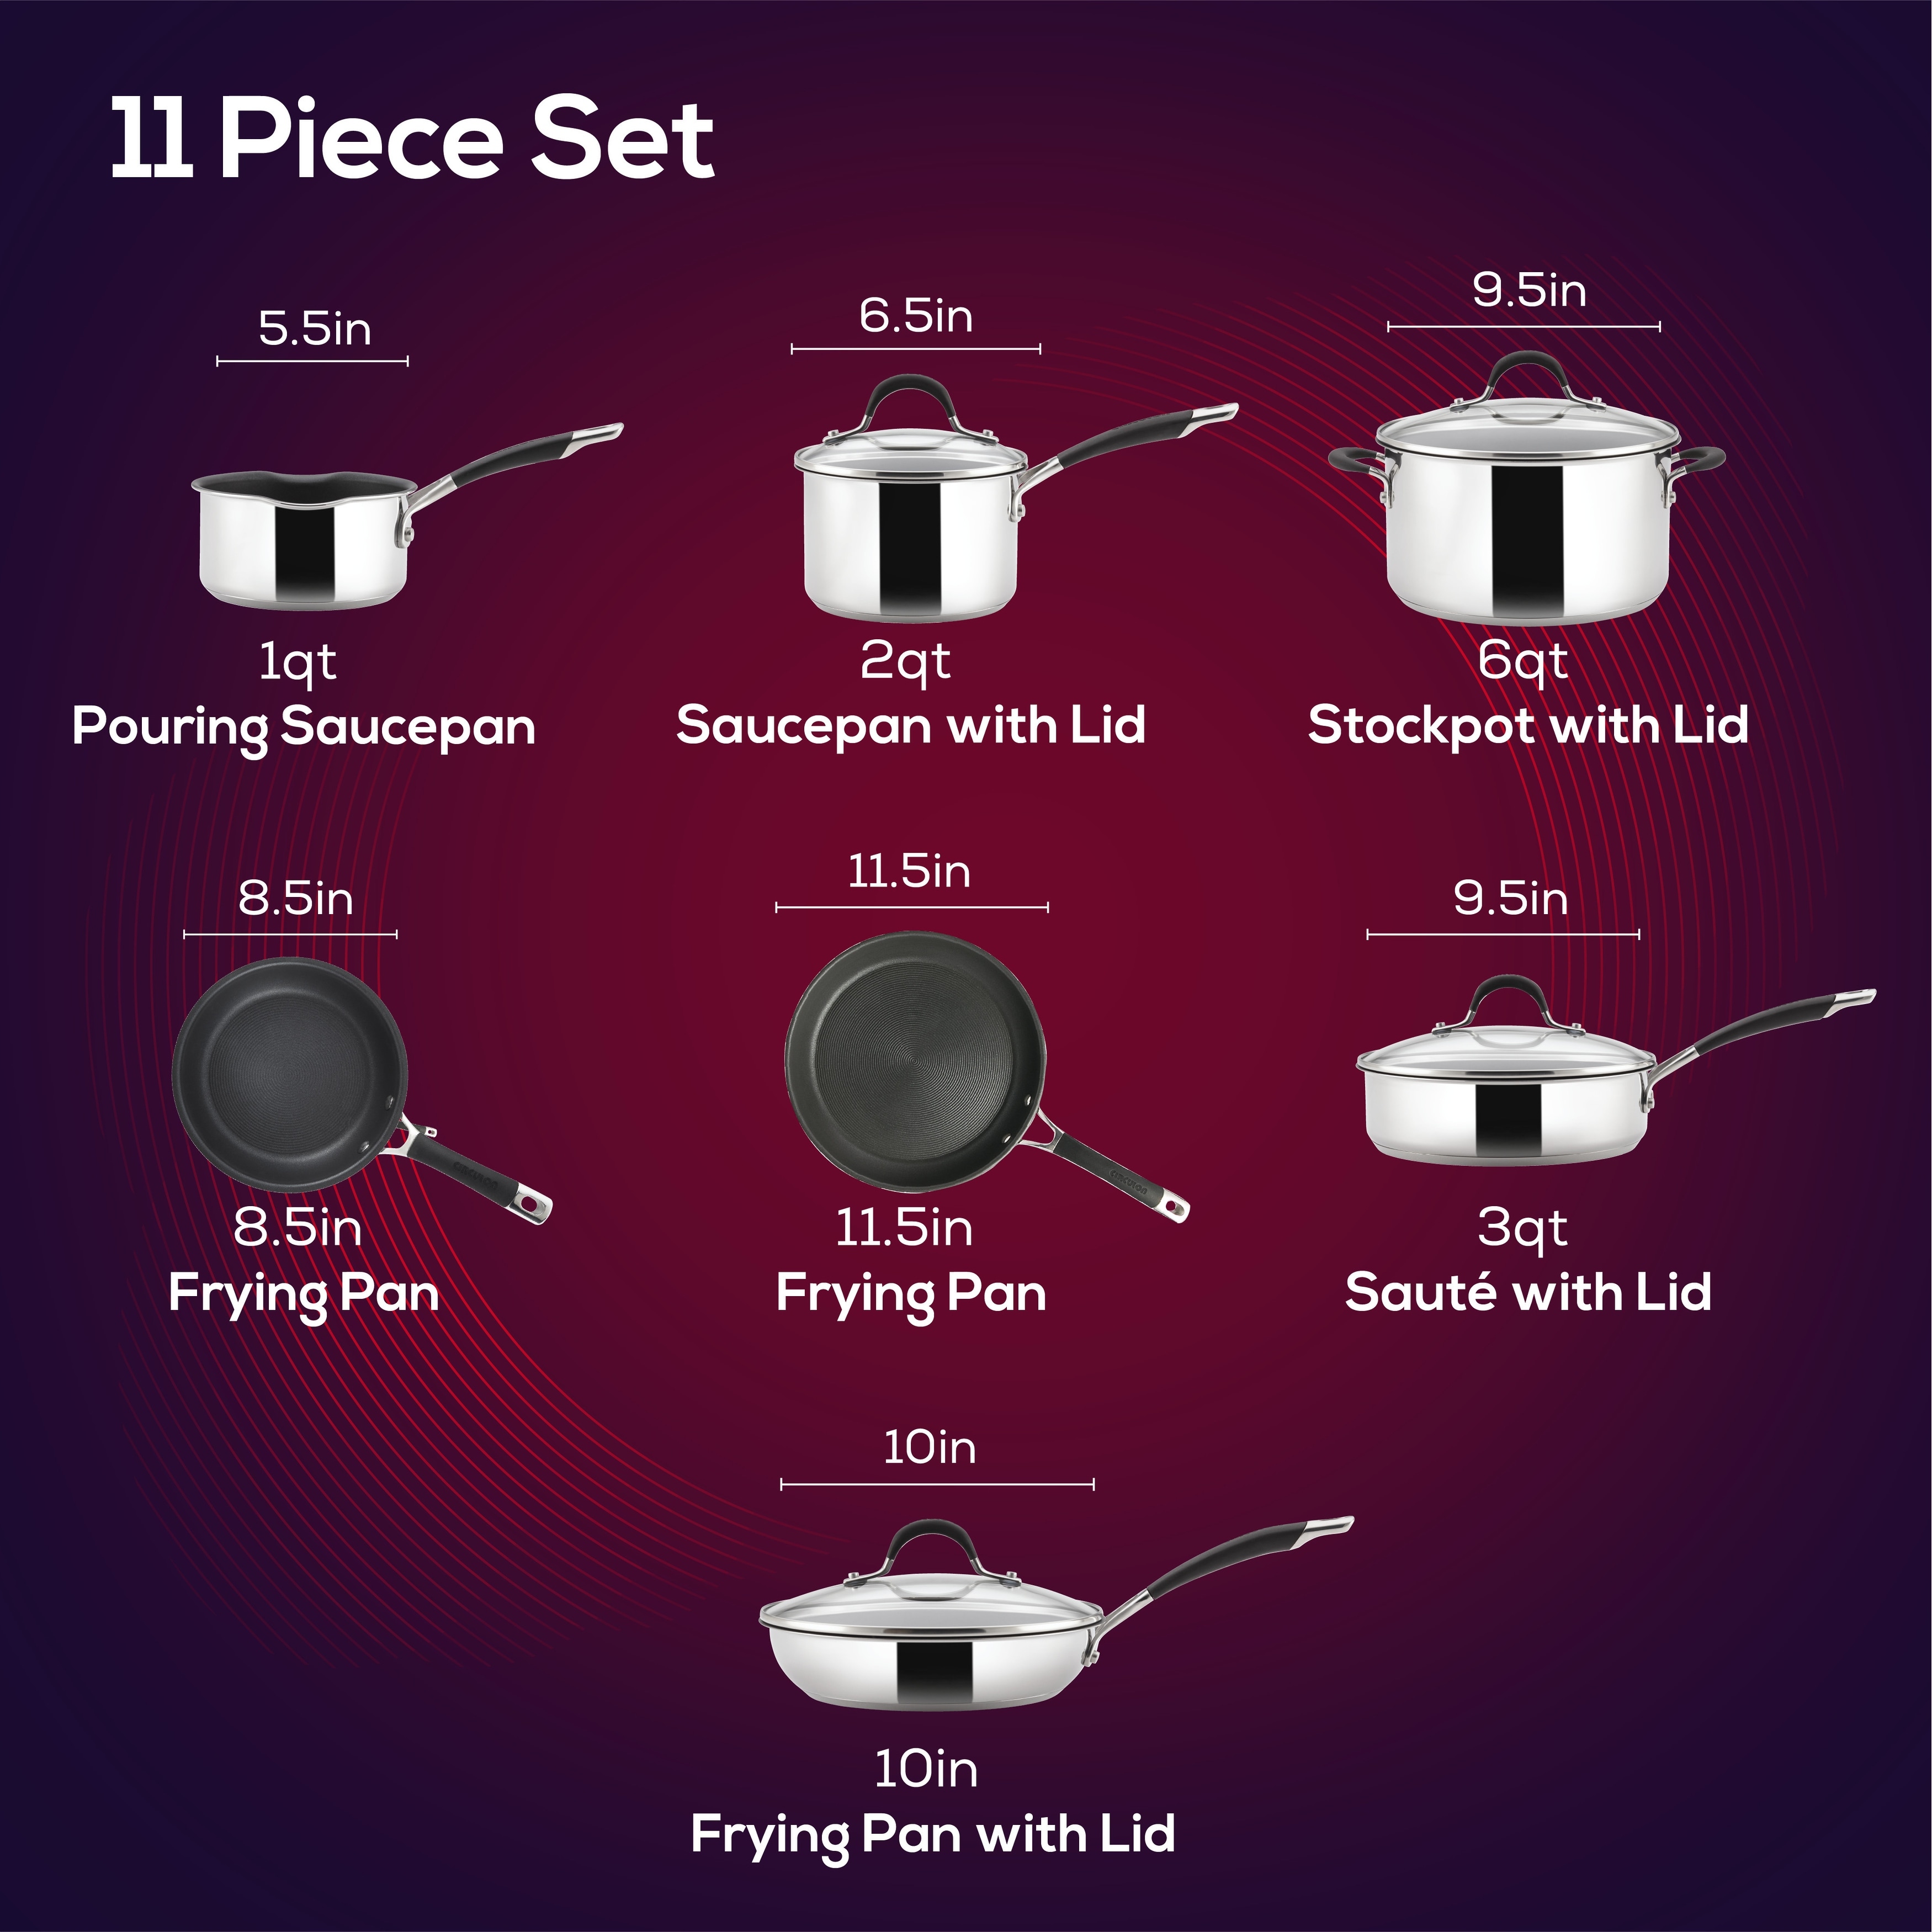 Circulon Momentum Stainless Steel Nonstick 11 Piece Cookware Set